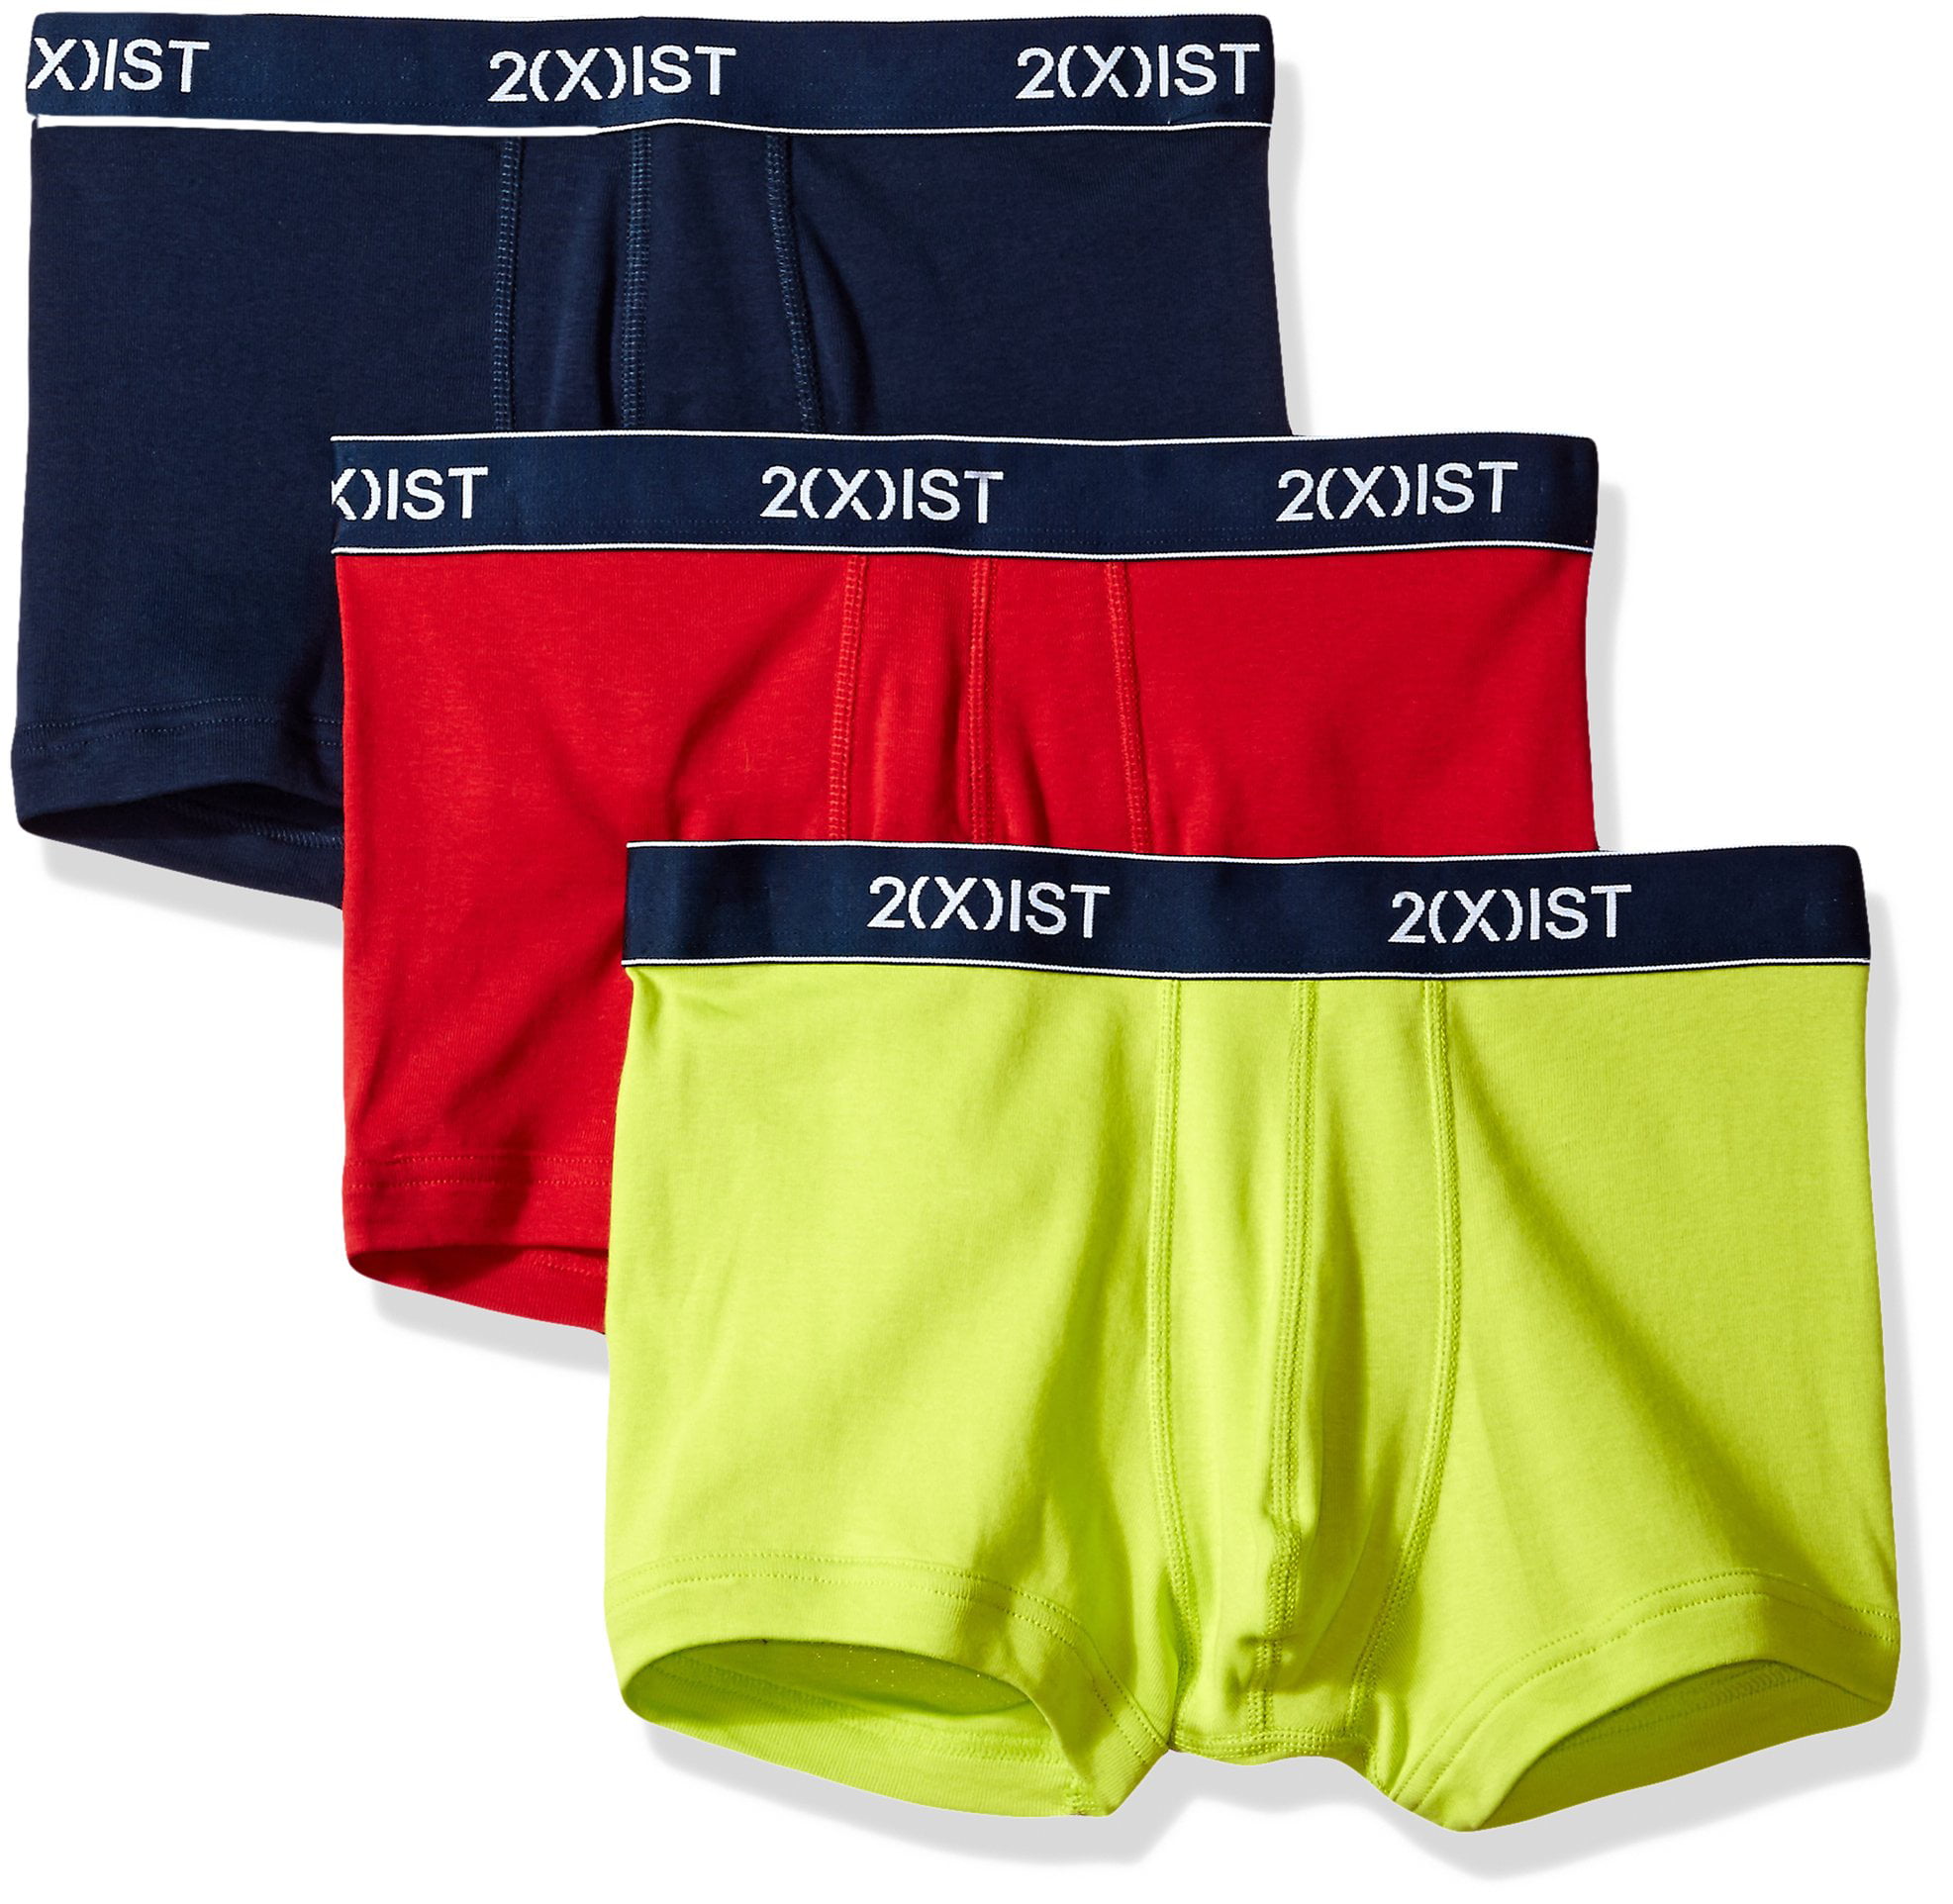 2 xist underwear